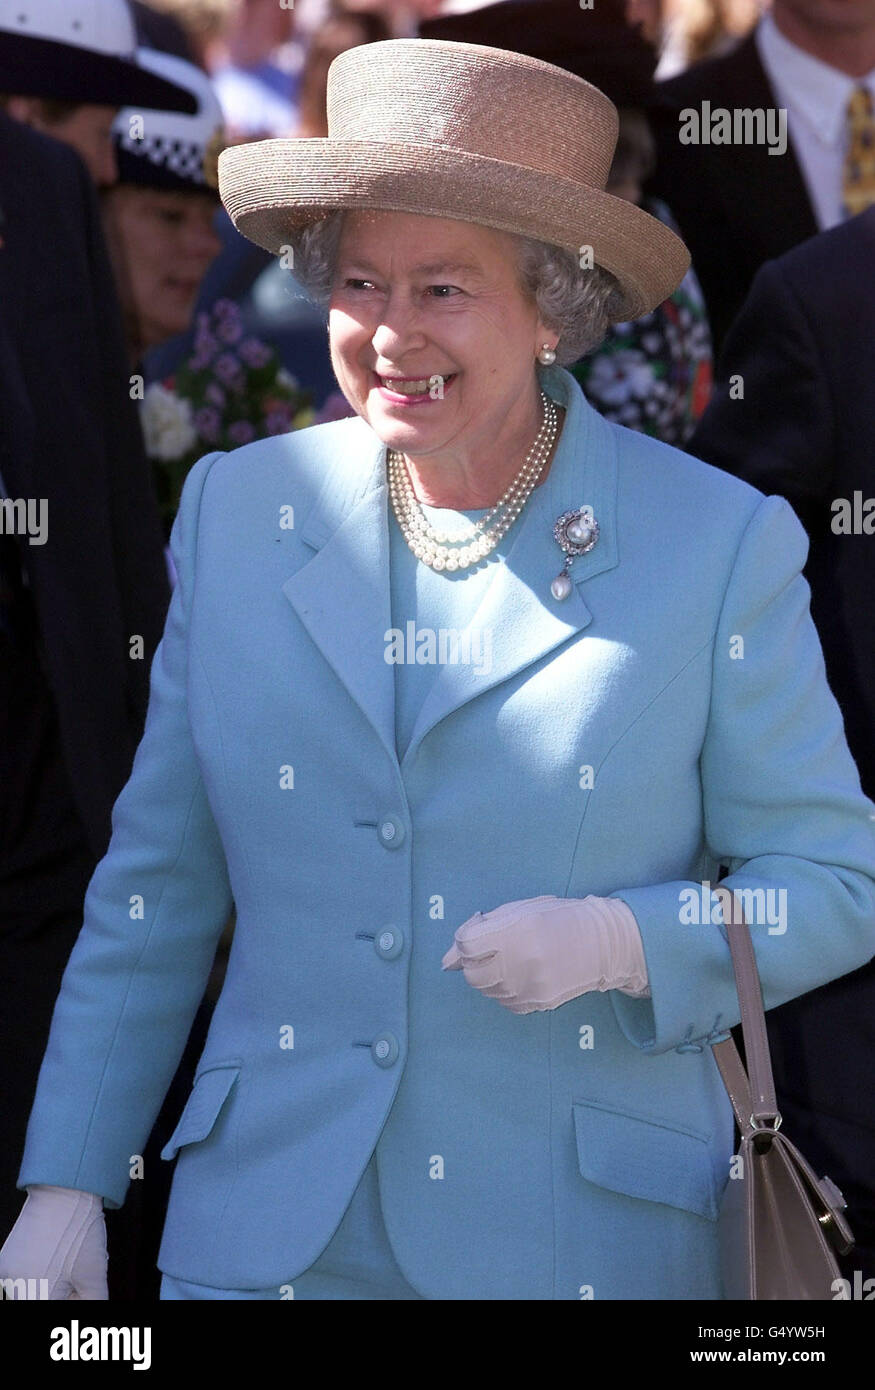 La reine Elizabeth II sourit lors de sa promenade royale à Launceston, en Tasmanie, dans le cadre de sa tournée en Australie avec le duc d'Édimbourg. Banque D'Images